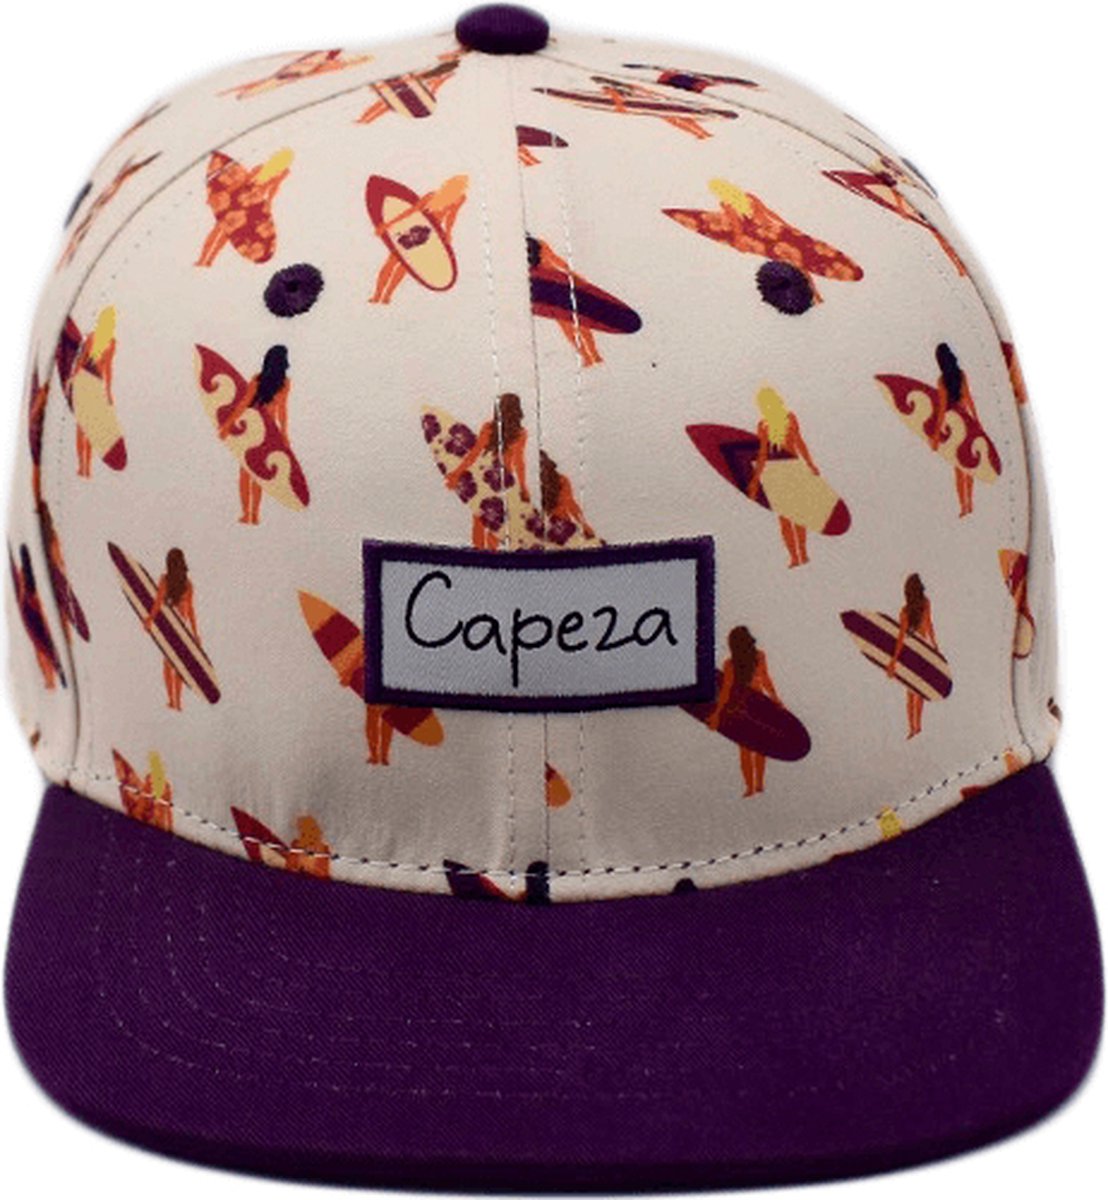 Capeza - Inès - Peuter 2-6 jaar - Snapback kind - Kinderpet - Zomerpet - Pet voor kinderen - snapback cap - peuter pet